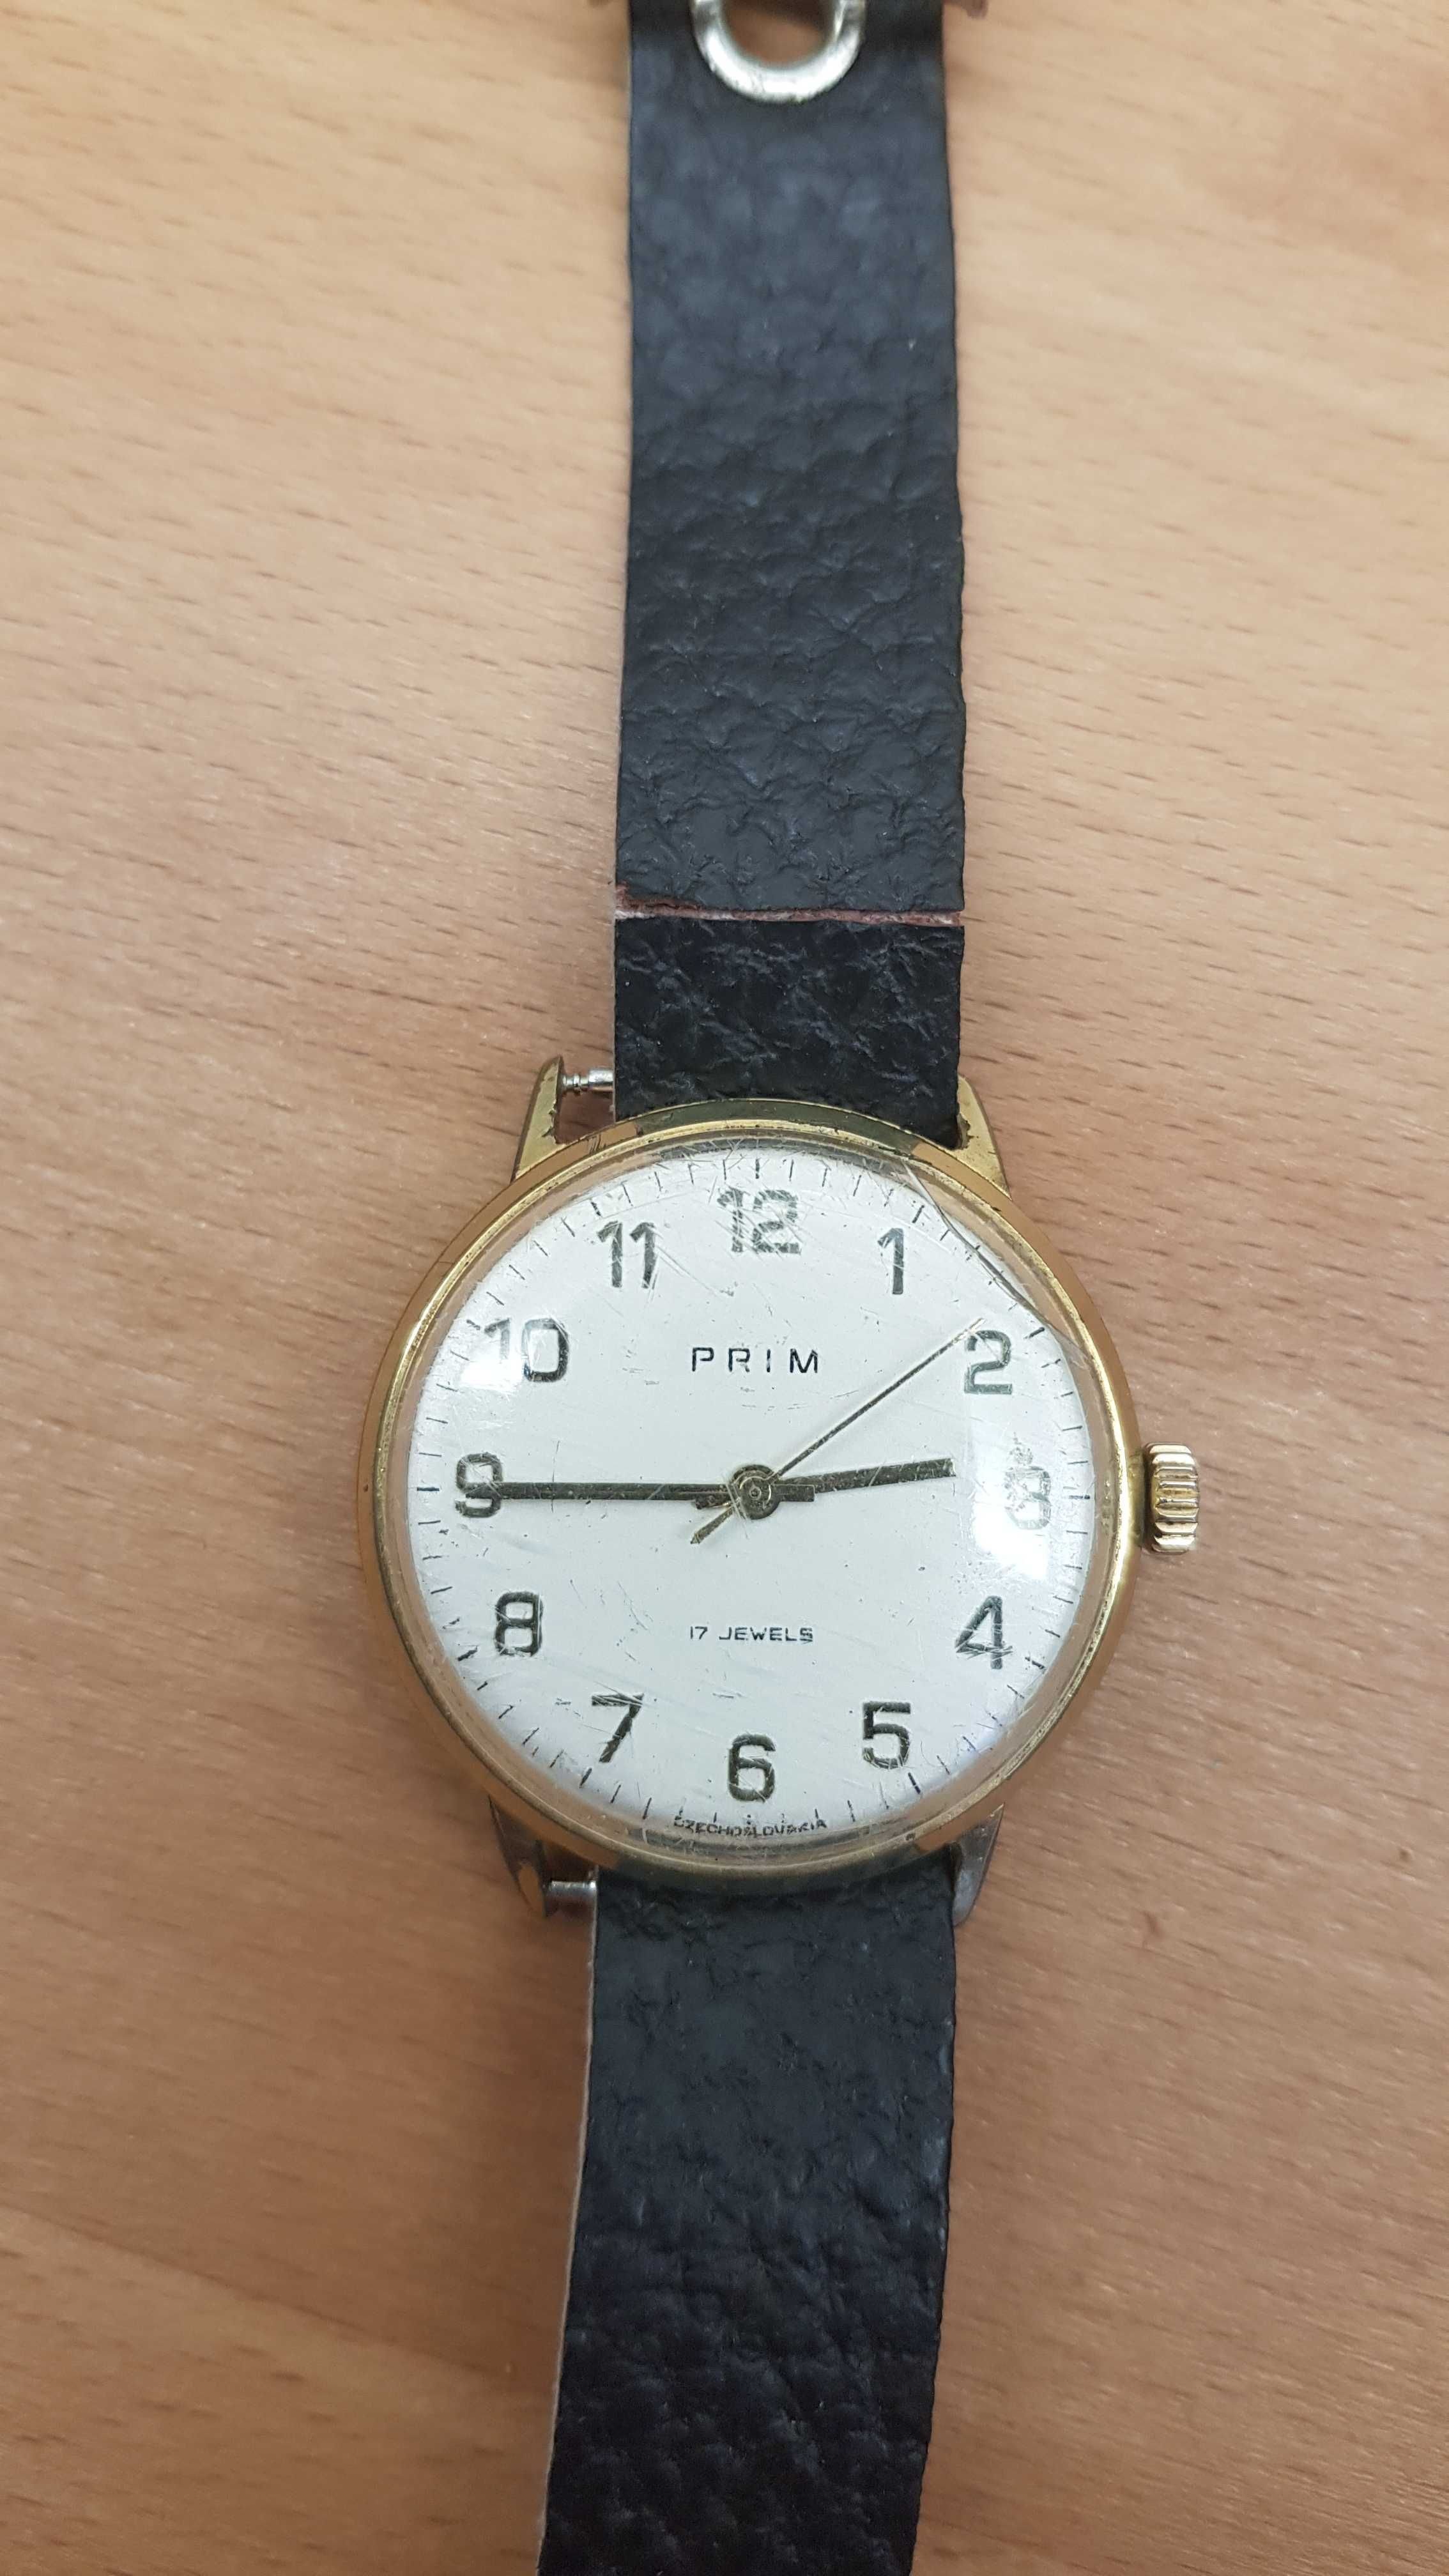 Radki zegarek PRIM 17 Jewels mechaniczny vintage Czechosłowacja